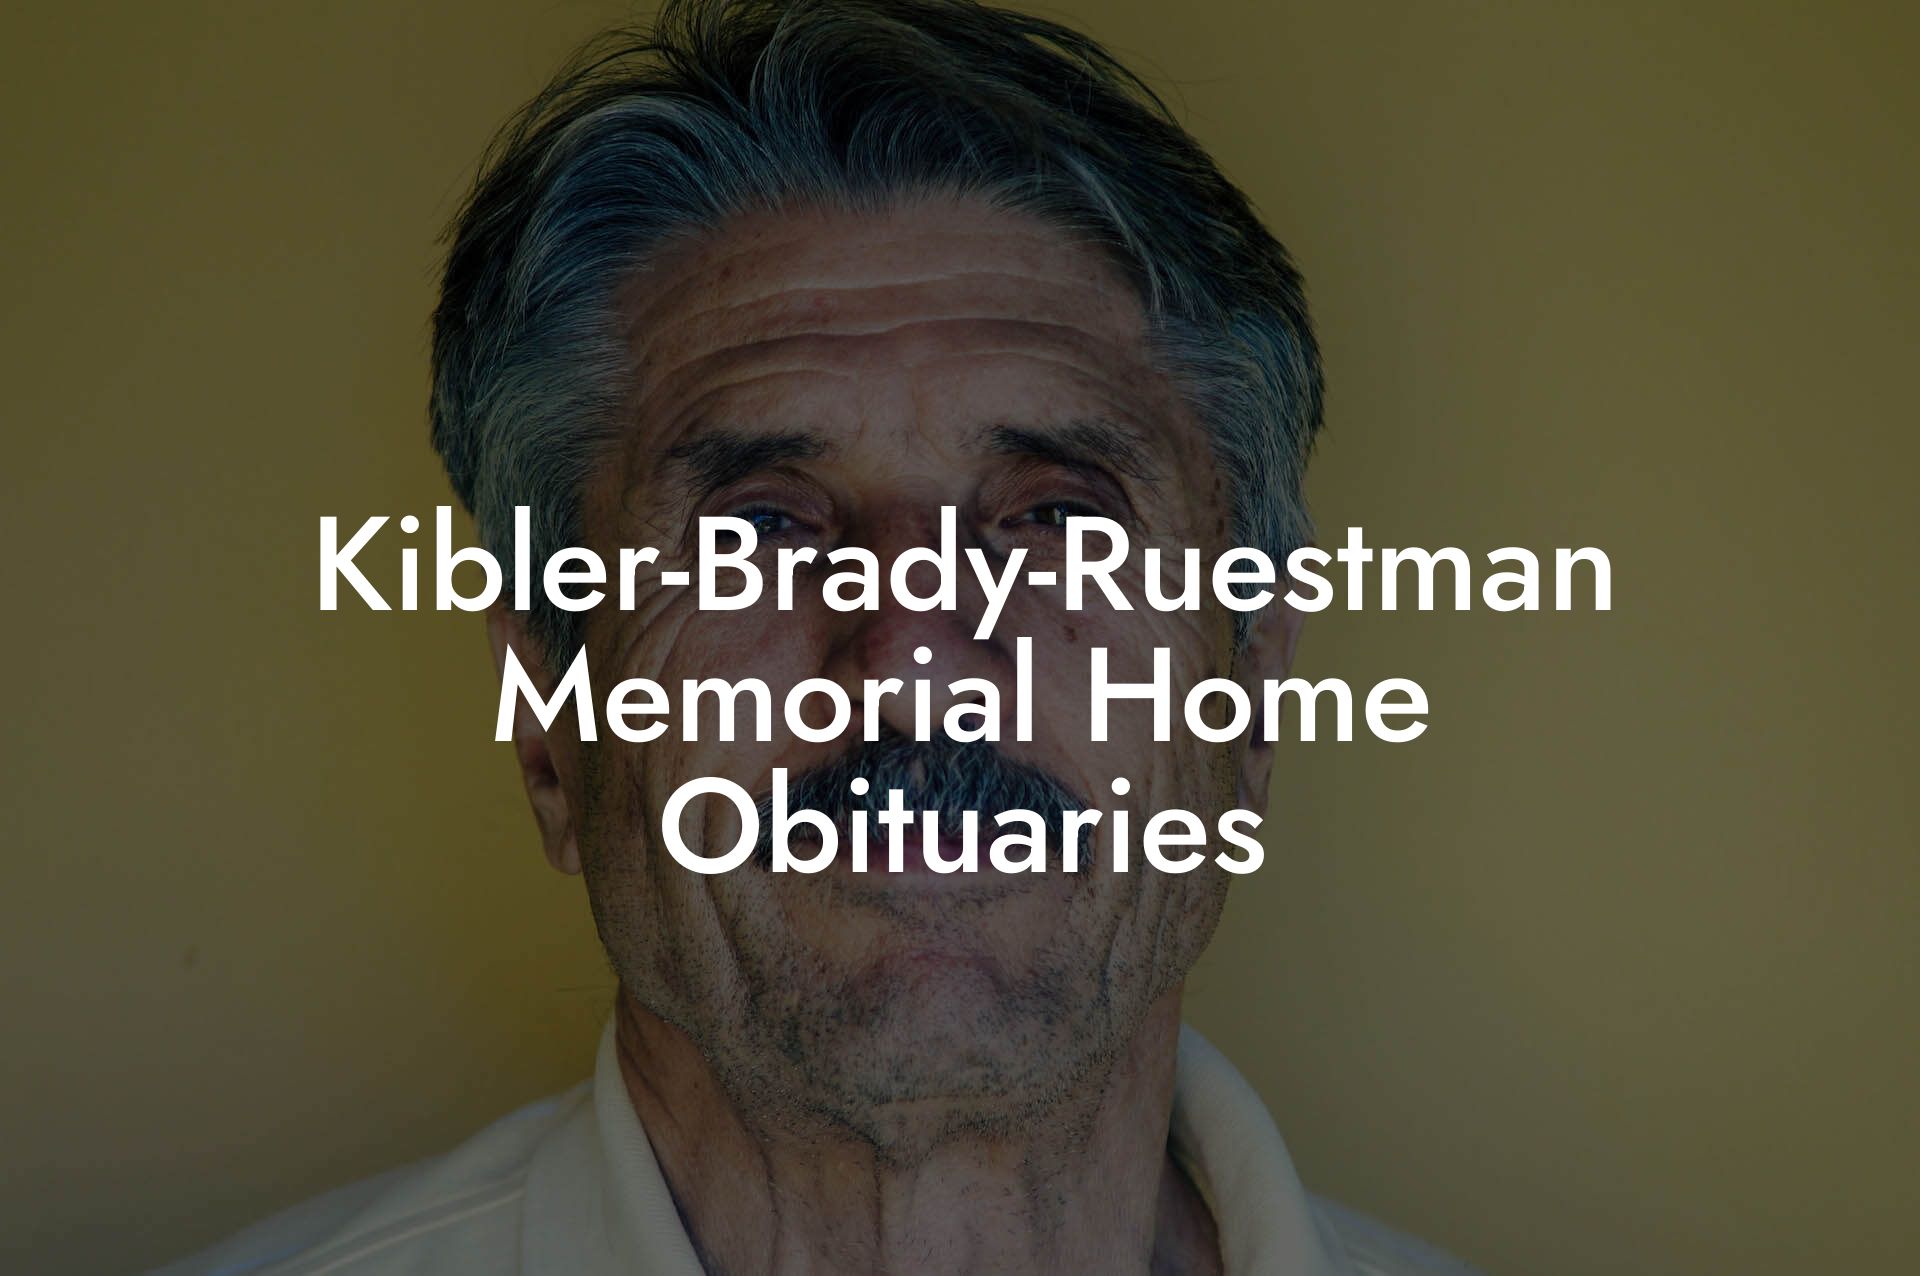 Kibler-Brady-Ruestman Memorial Home Obituaries